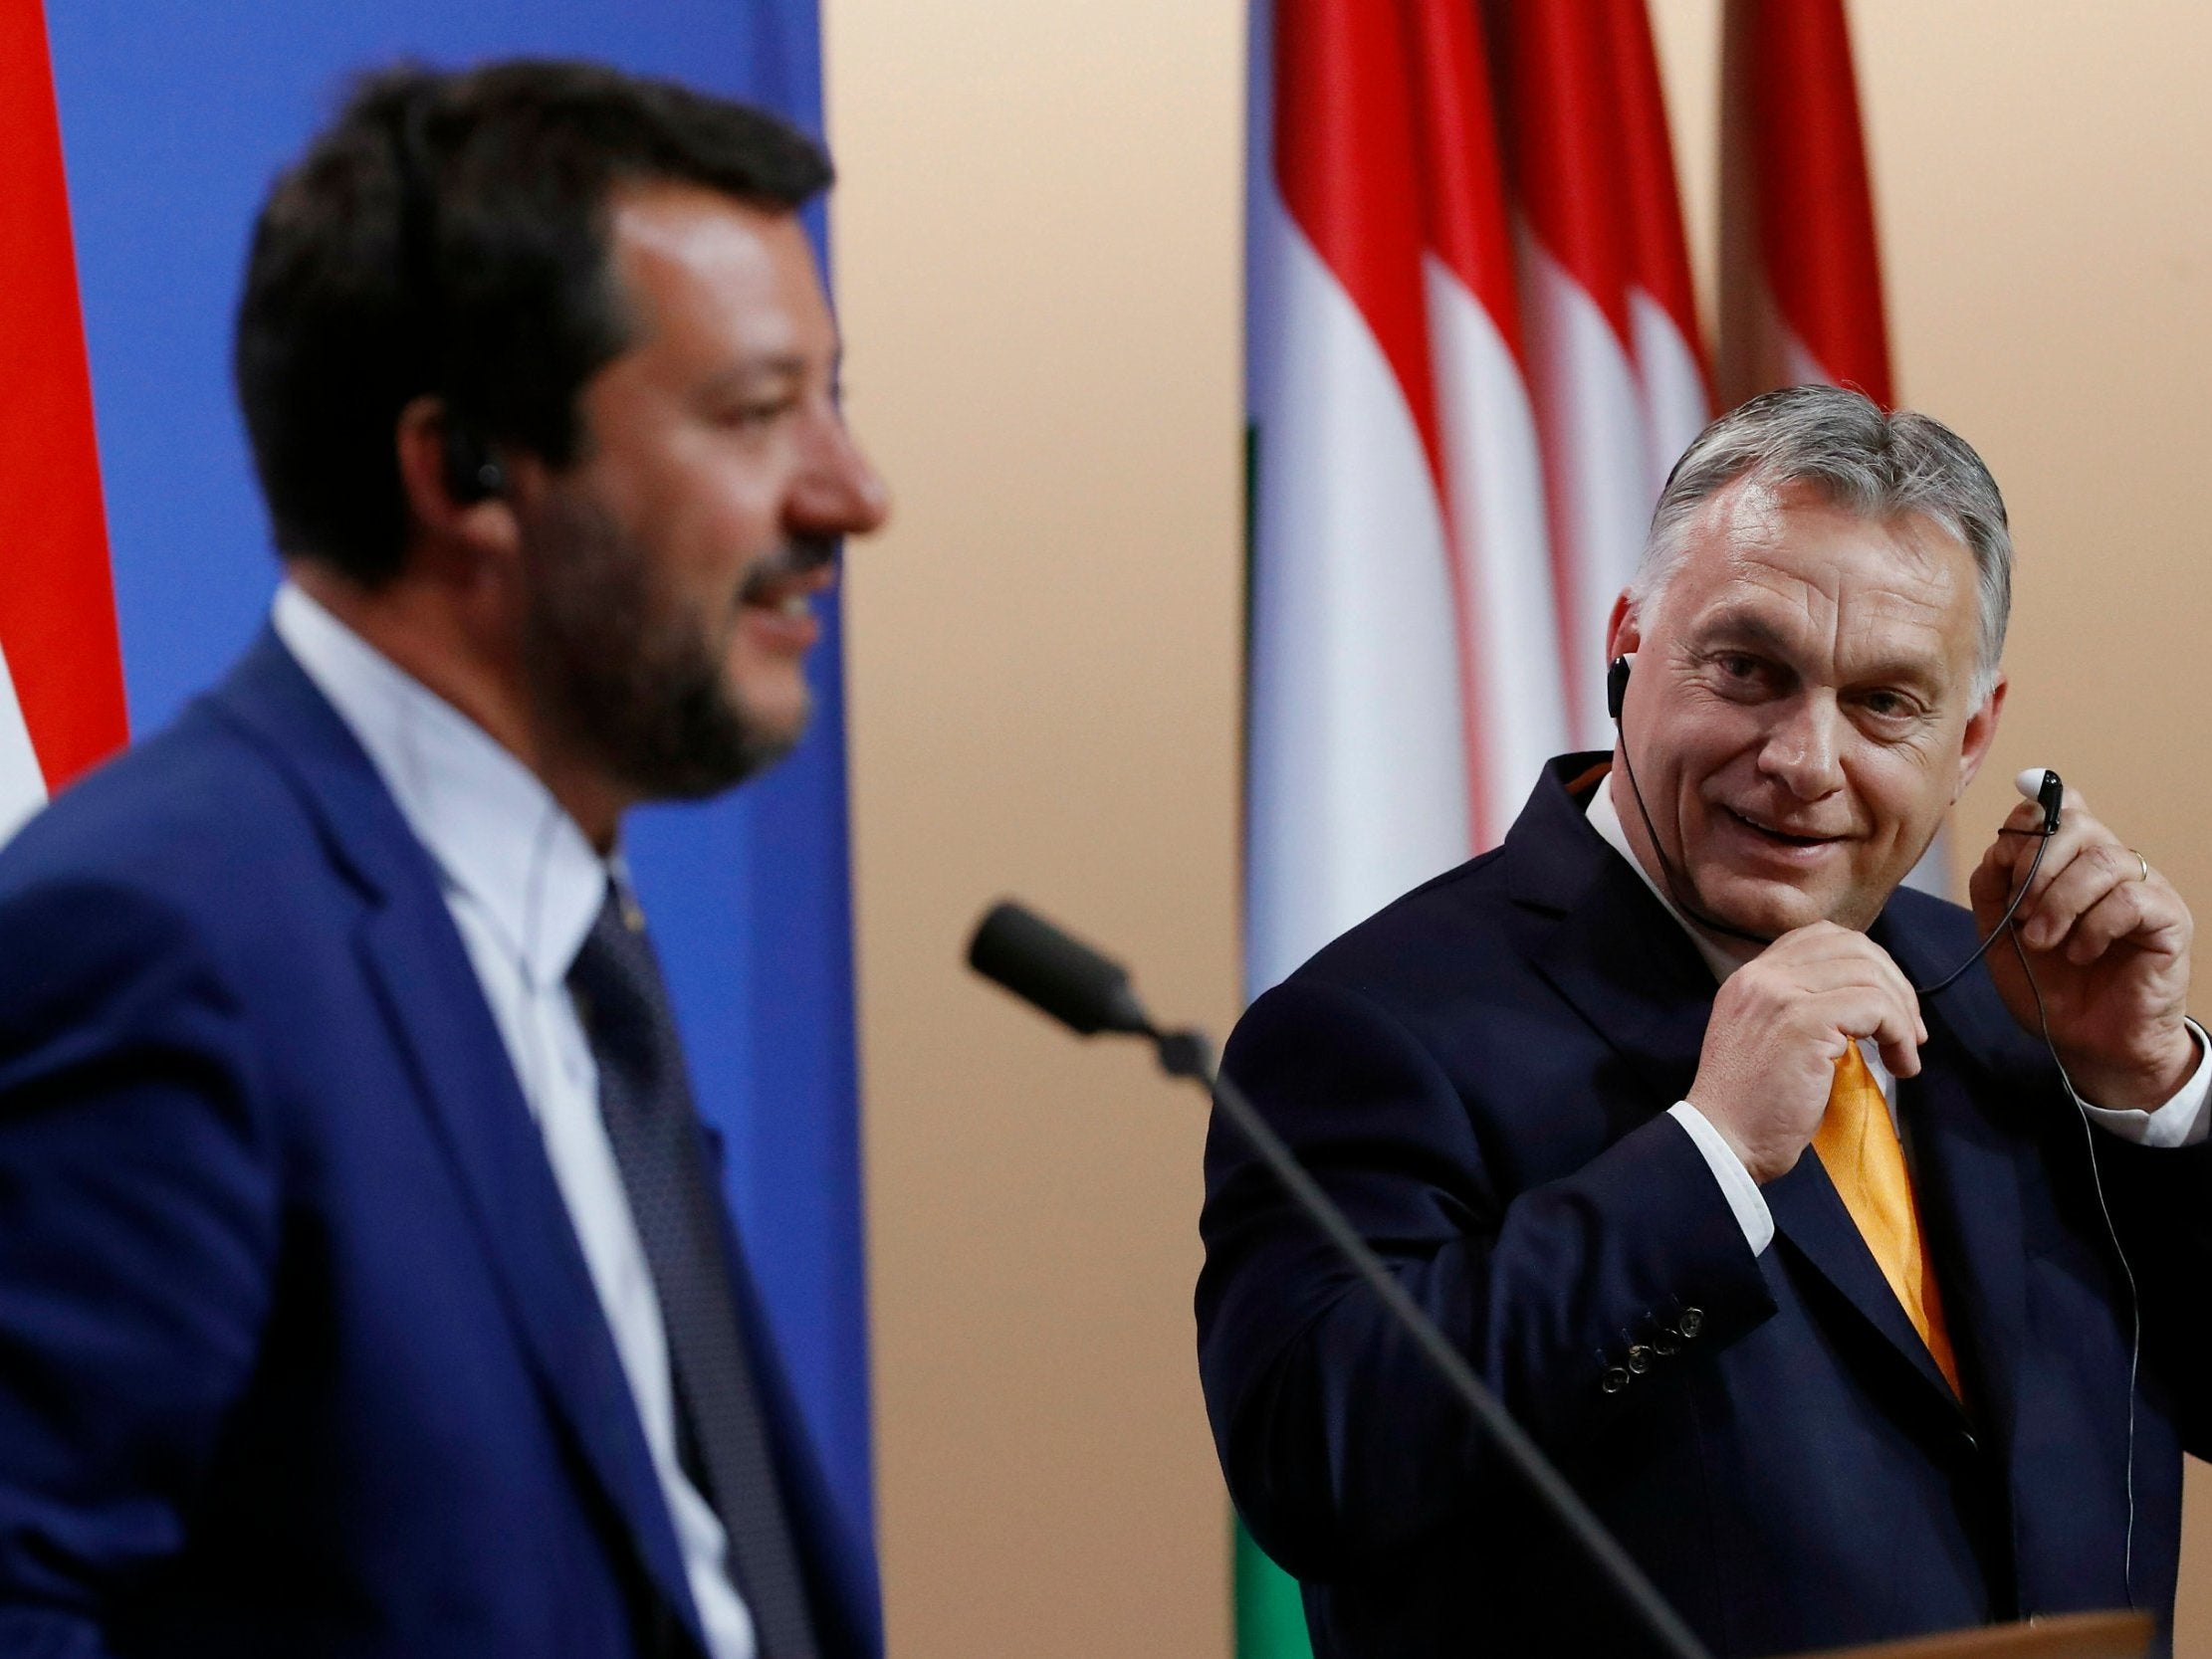 Italian far-right leader Matteo Salvini and Hungary's authoritarian prime minister Viktor Orban in Budapest